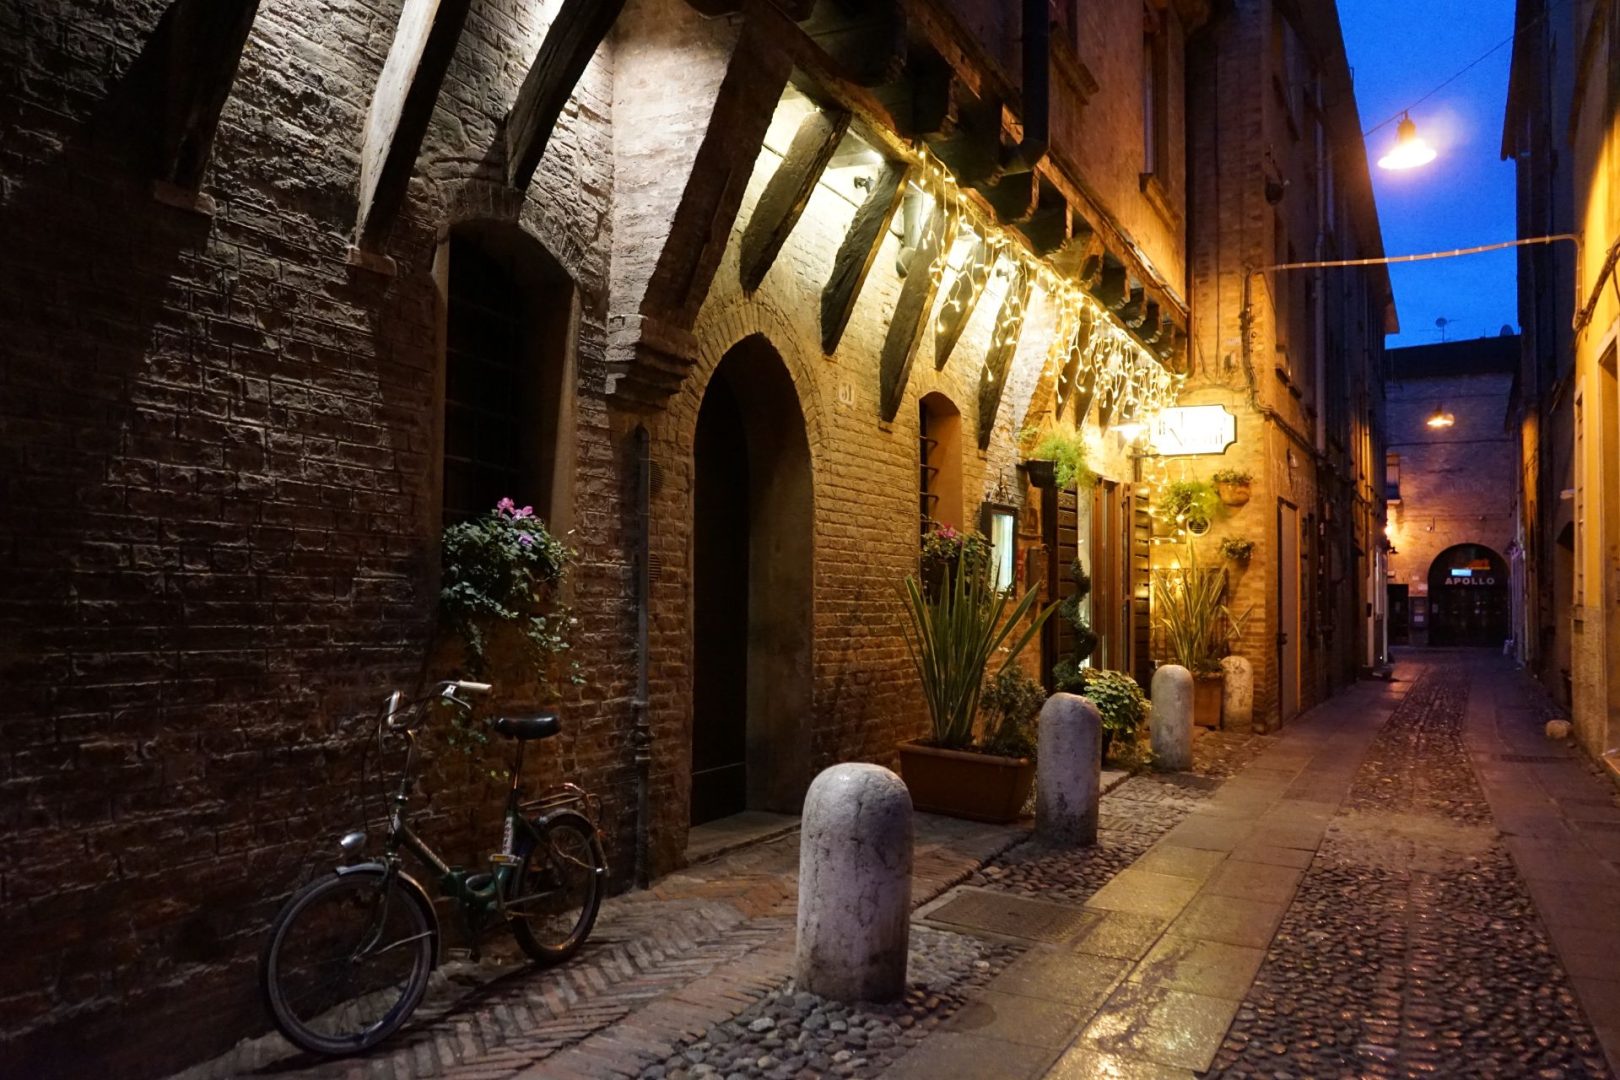 Ferrara medieval alley at night